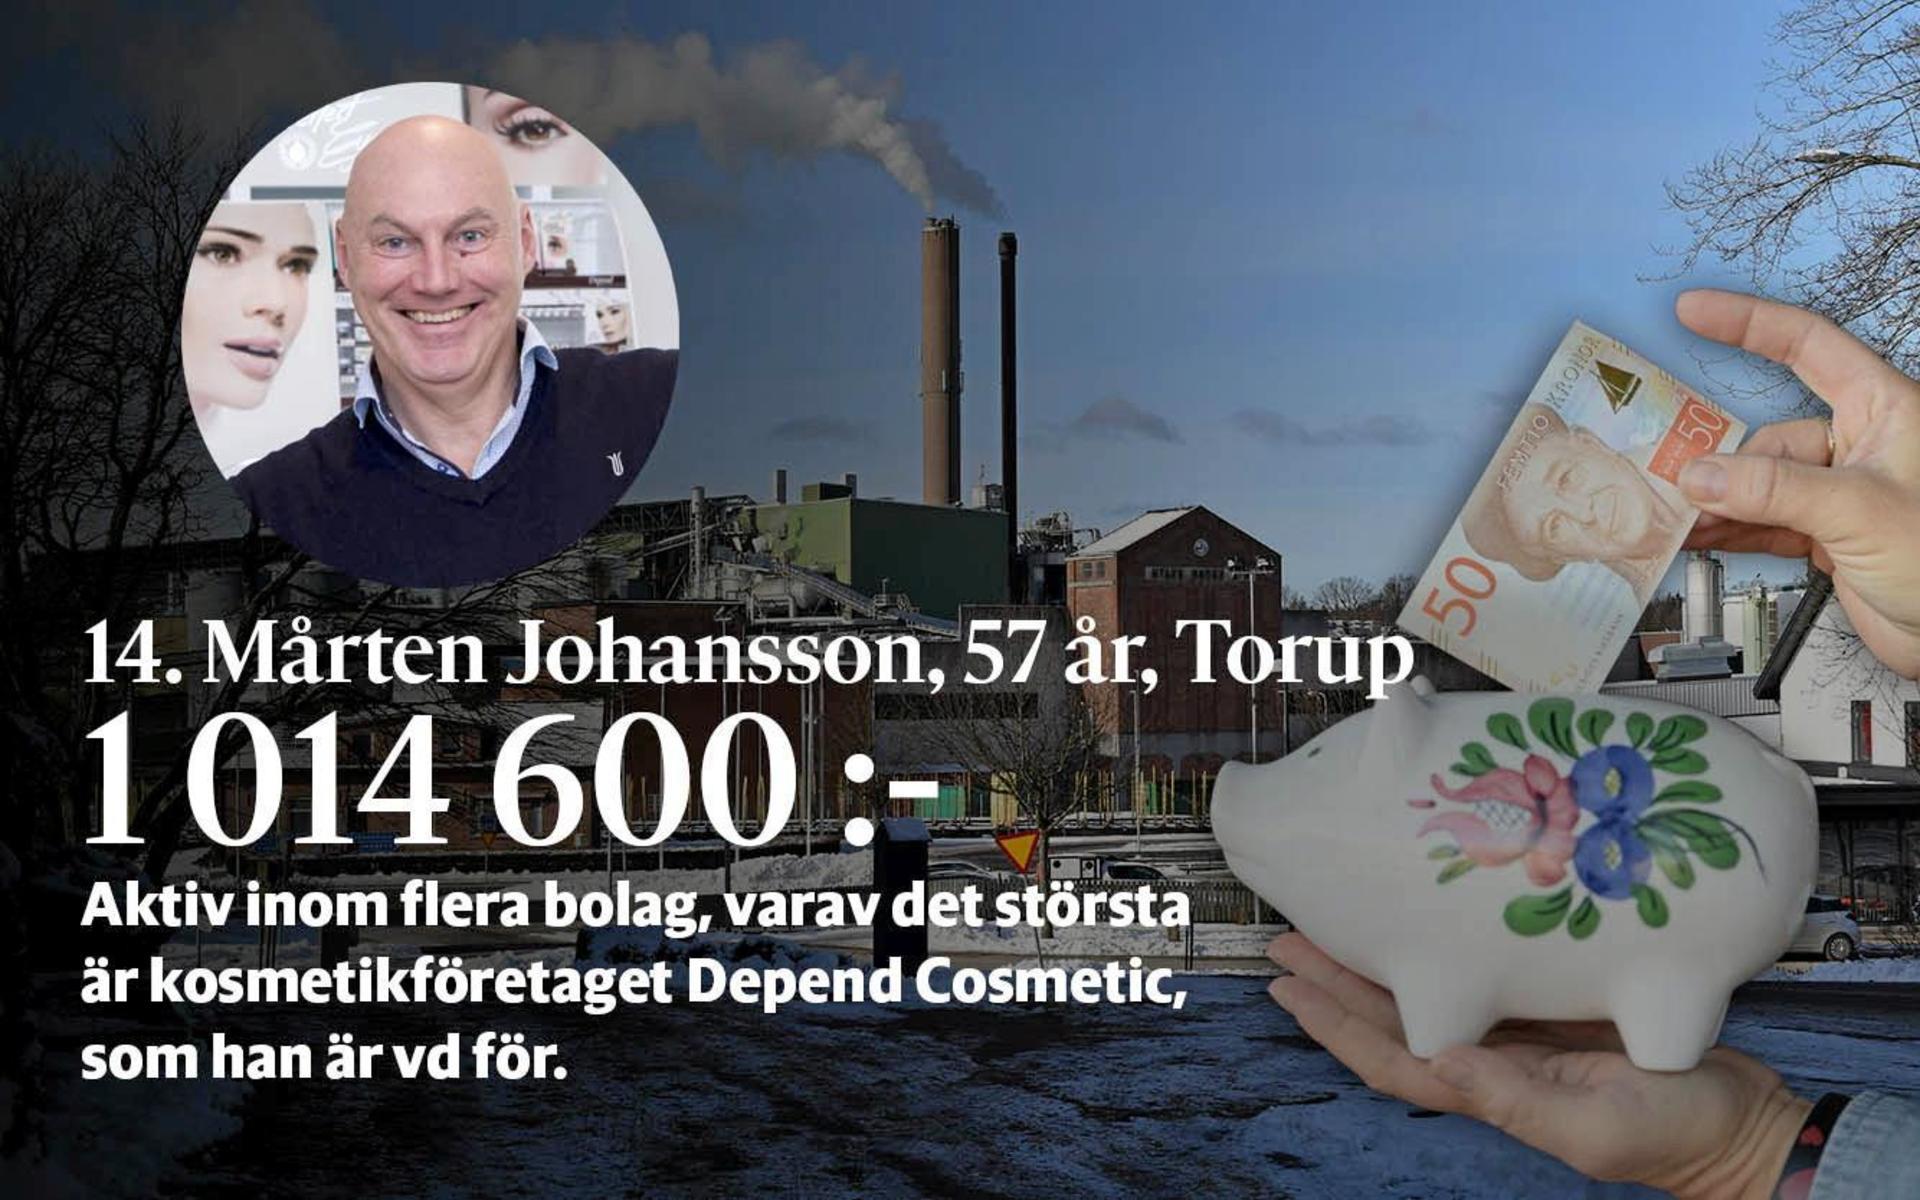 14. Mårten Johansson är aktiv inom flera bolag, varav det största är kosmetikföretaget Depend Cosmetic (som han tog över för 30 år sedan) och är vd för. Drev Torups gästgivaregård fram till 2016.